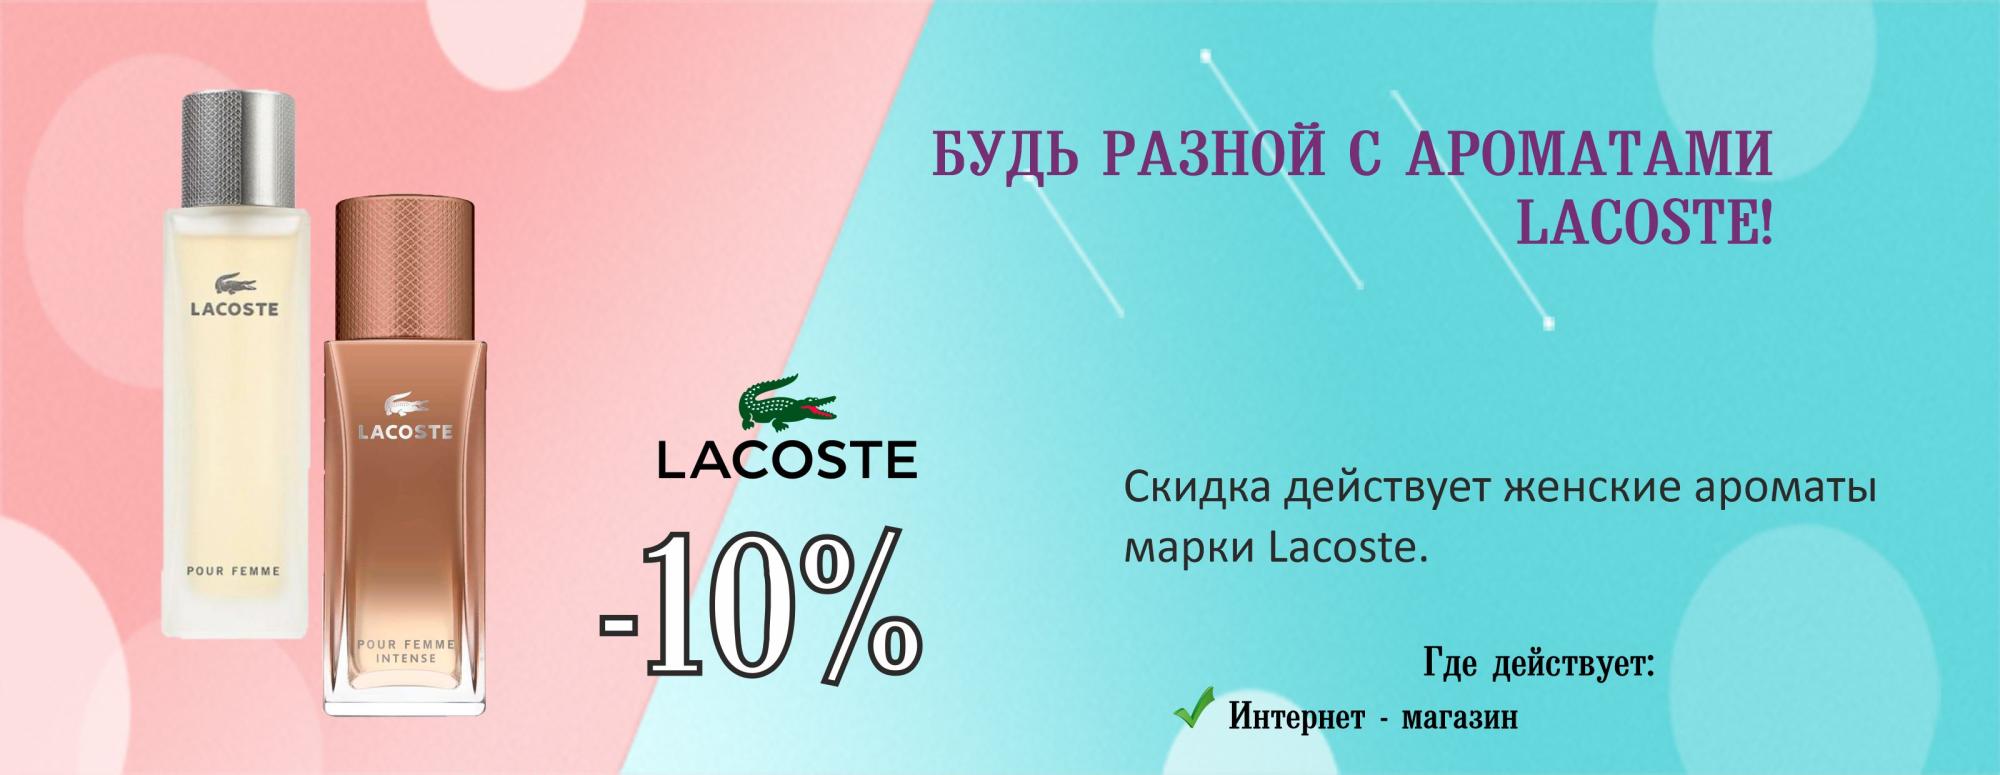 Женские ароматы Lacoste  10%